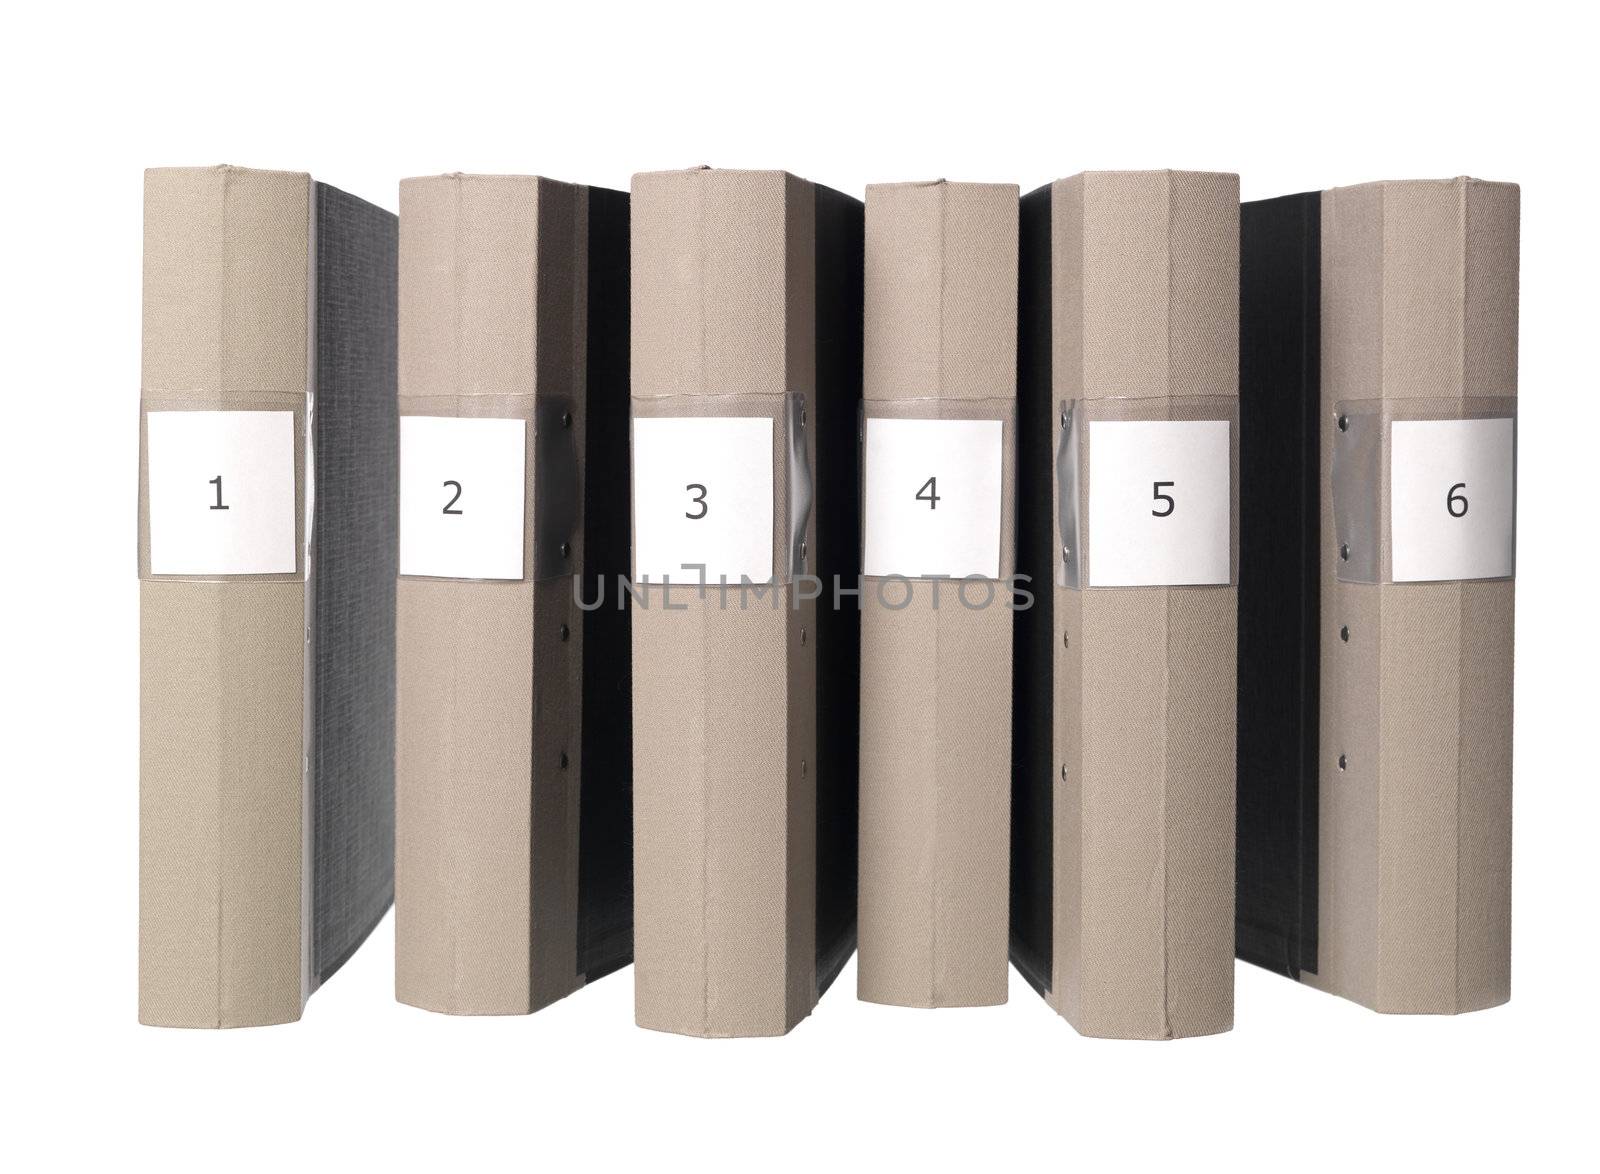 Six folders by gemenacom